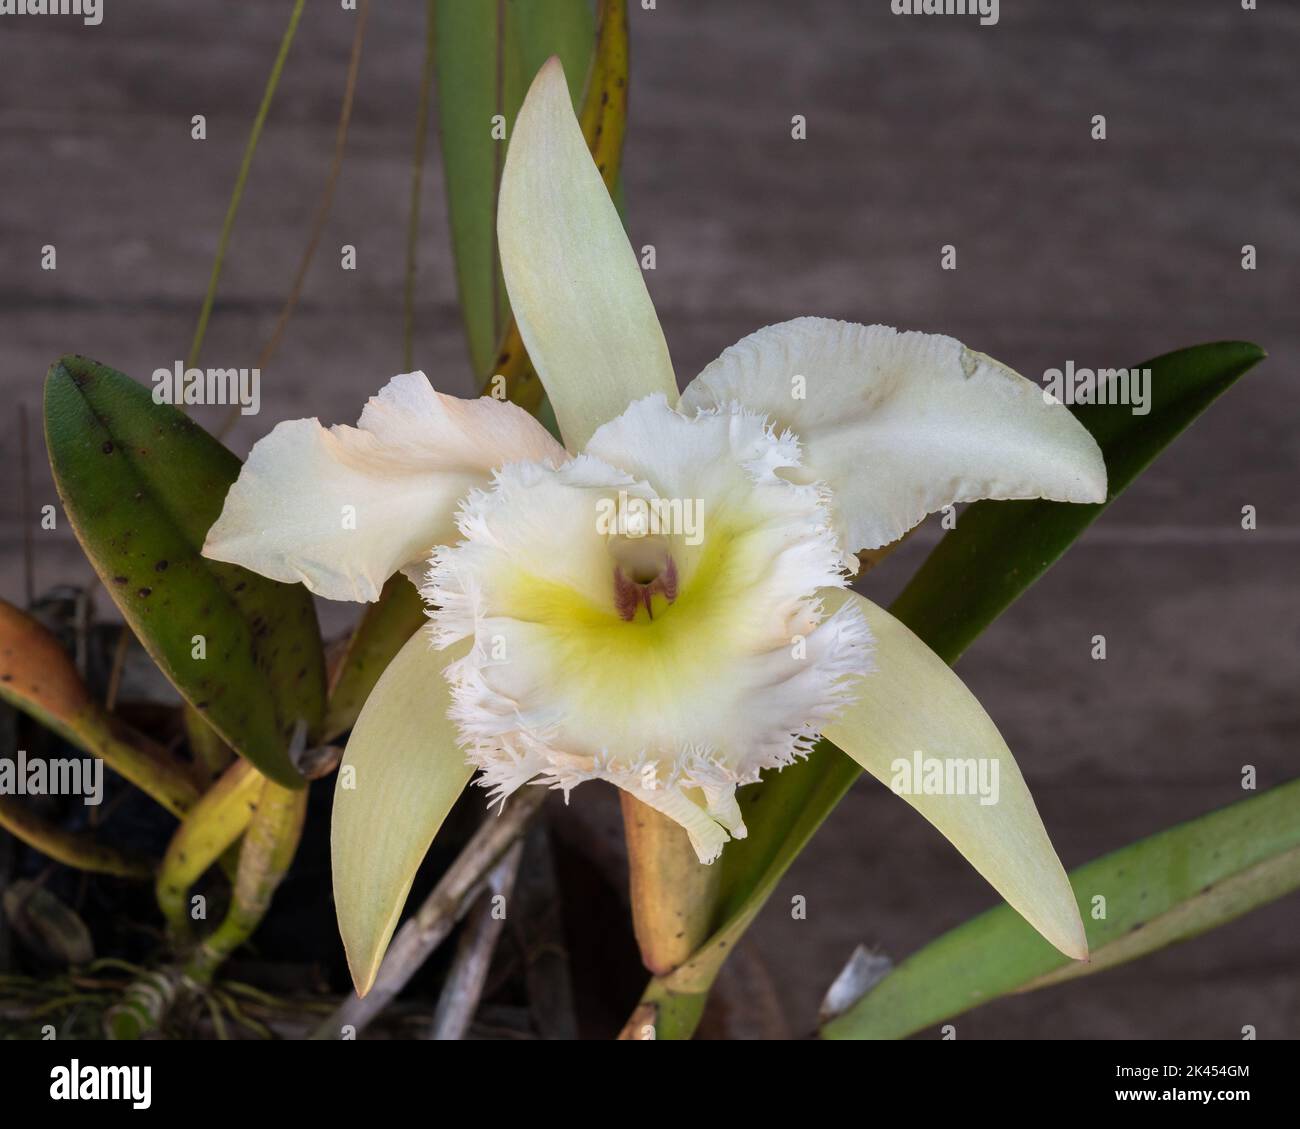 Vue rapprochée de la belle délicate ivoire blanc et jaune chattleya hybride de fleur d'orchidée isolée sur fond de bois naturel Banque D'Images